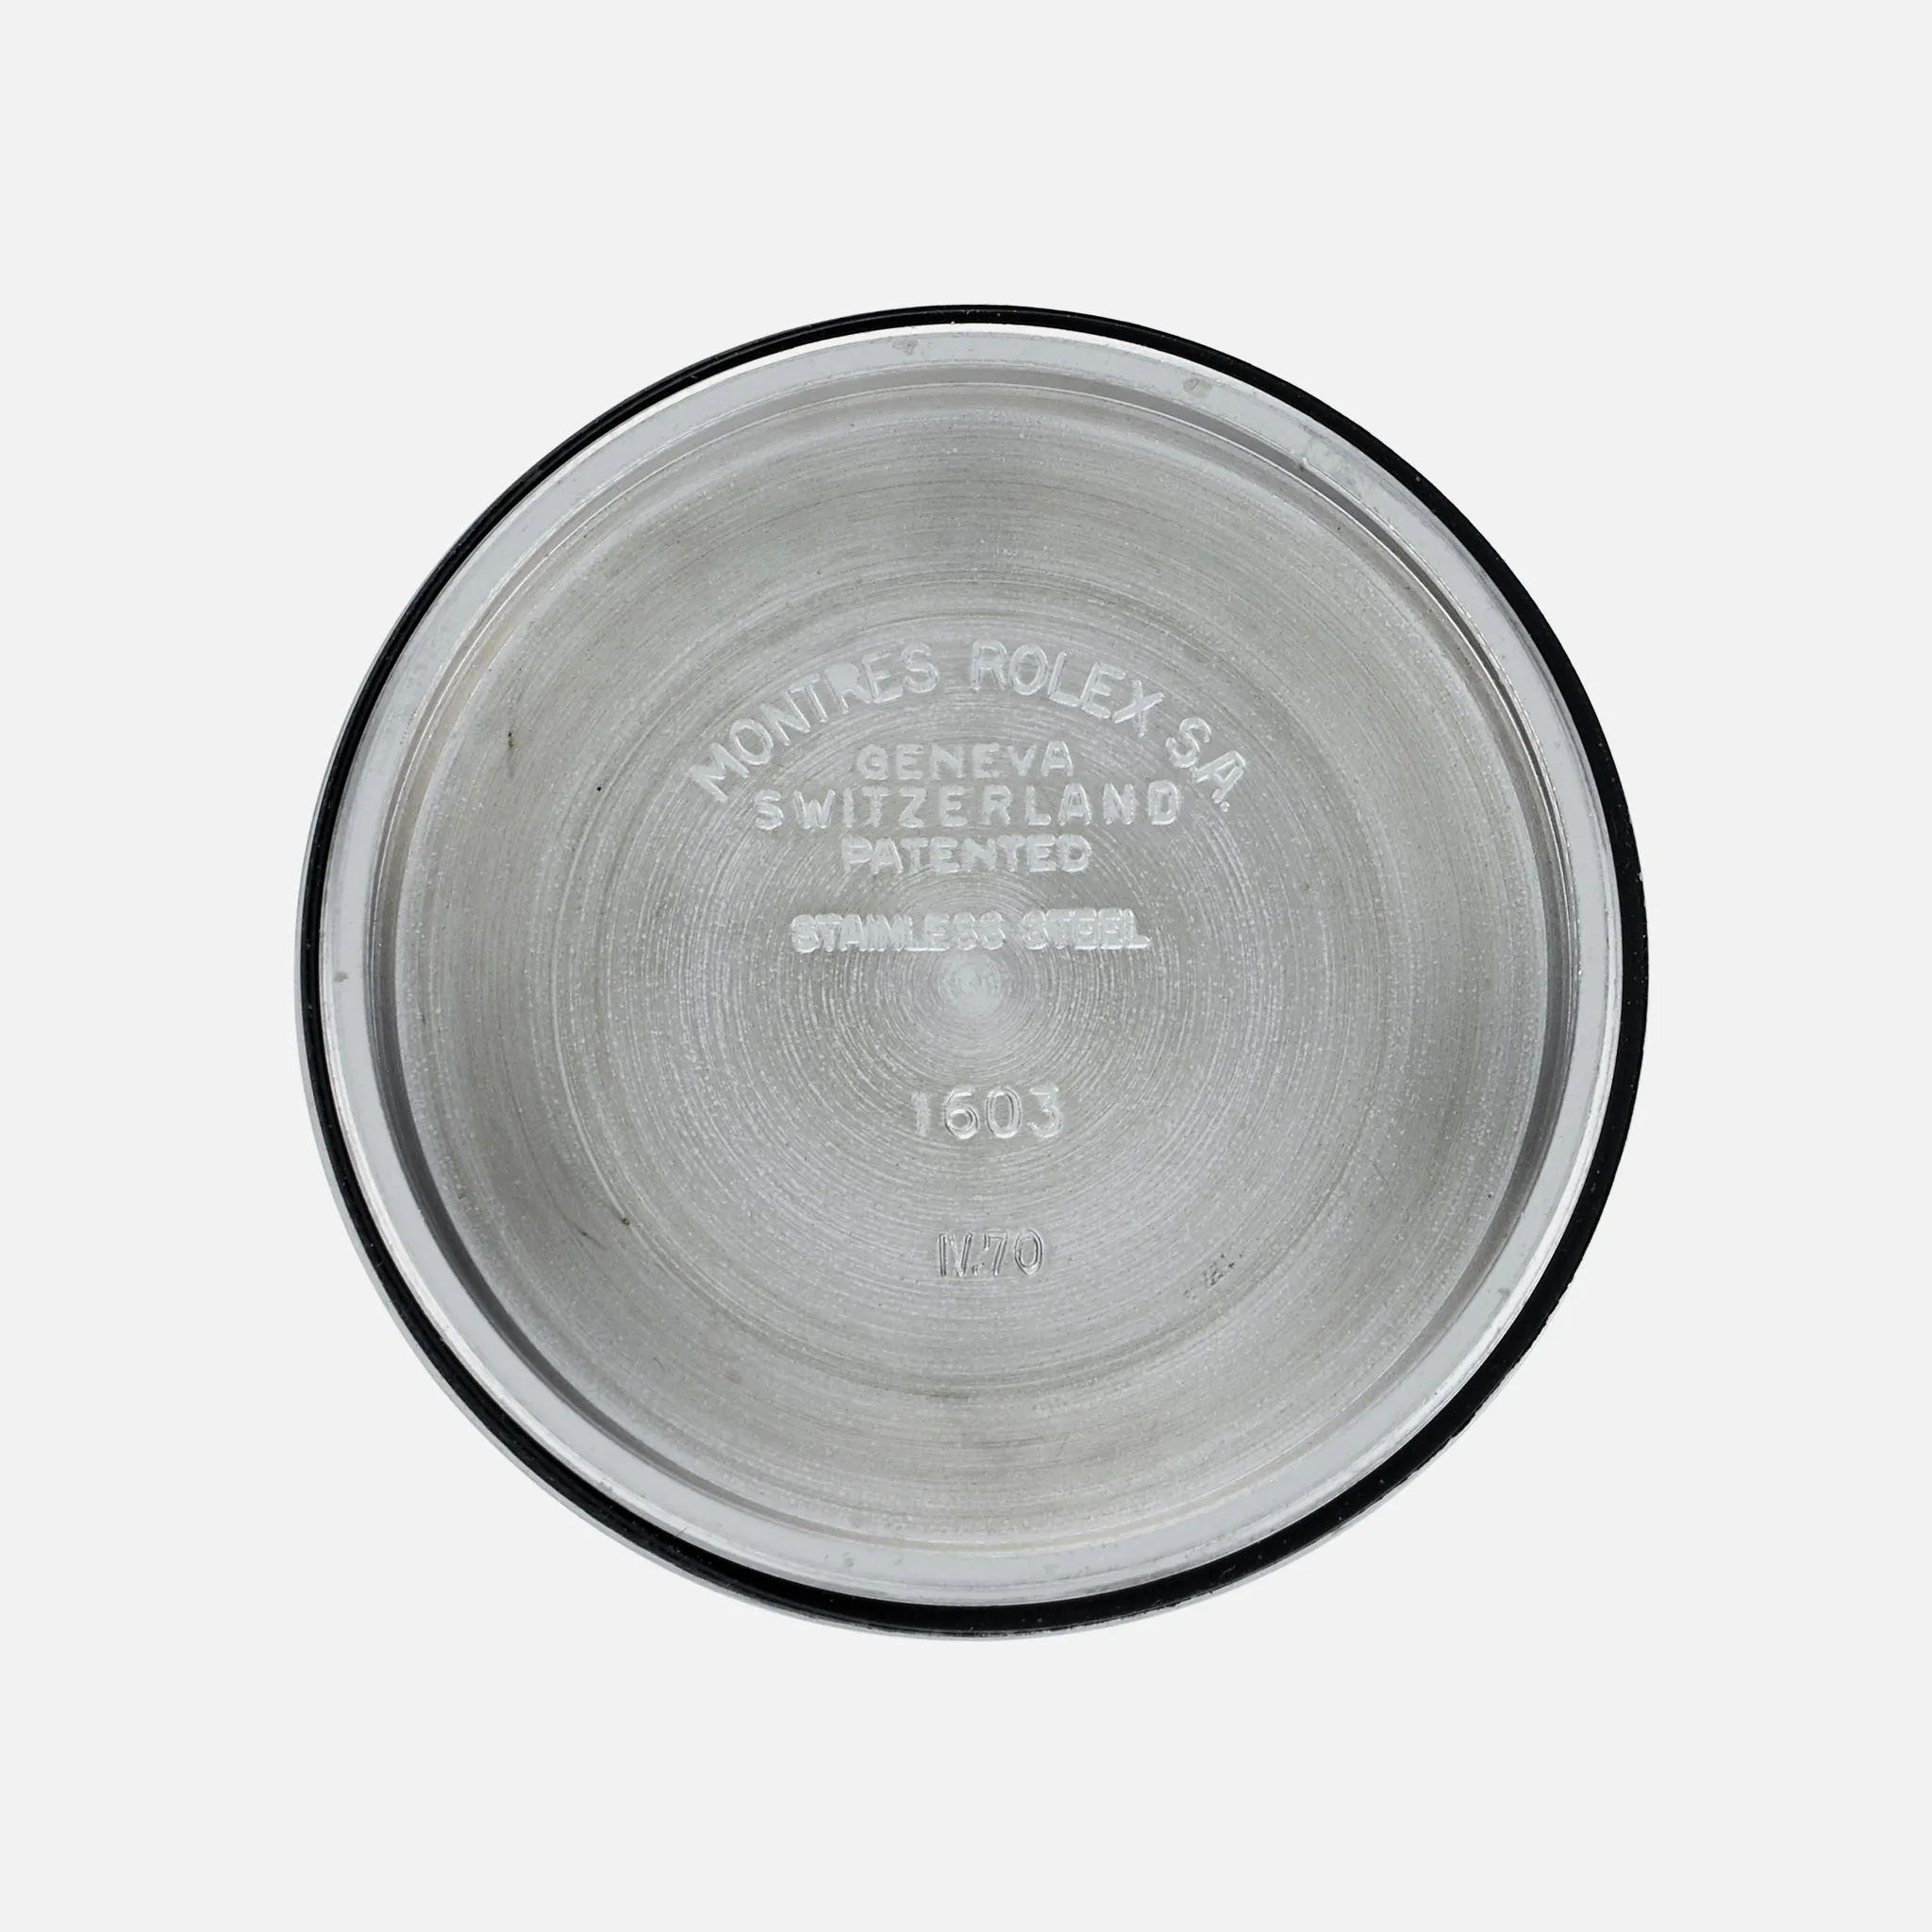 Rolex Datejust 1603 36mm Stainless steel Silver sunburst 5